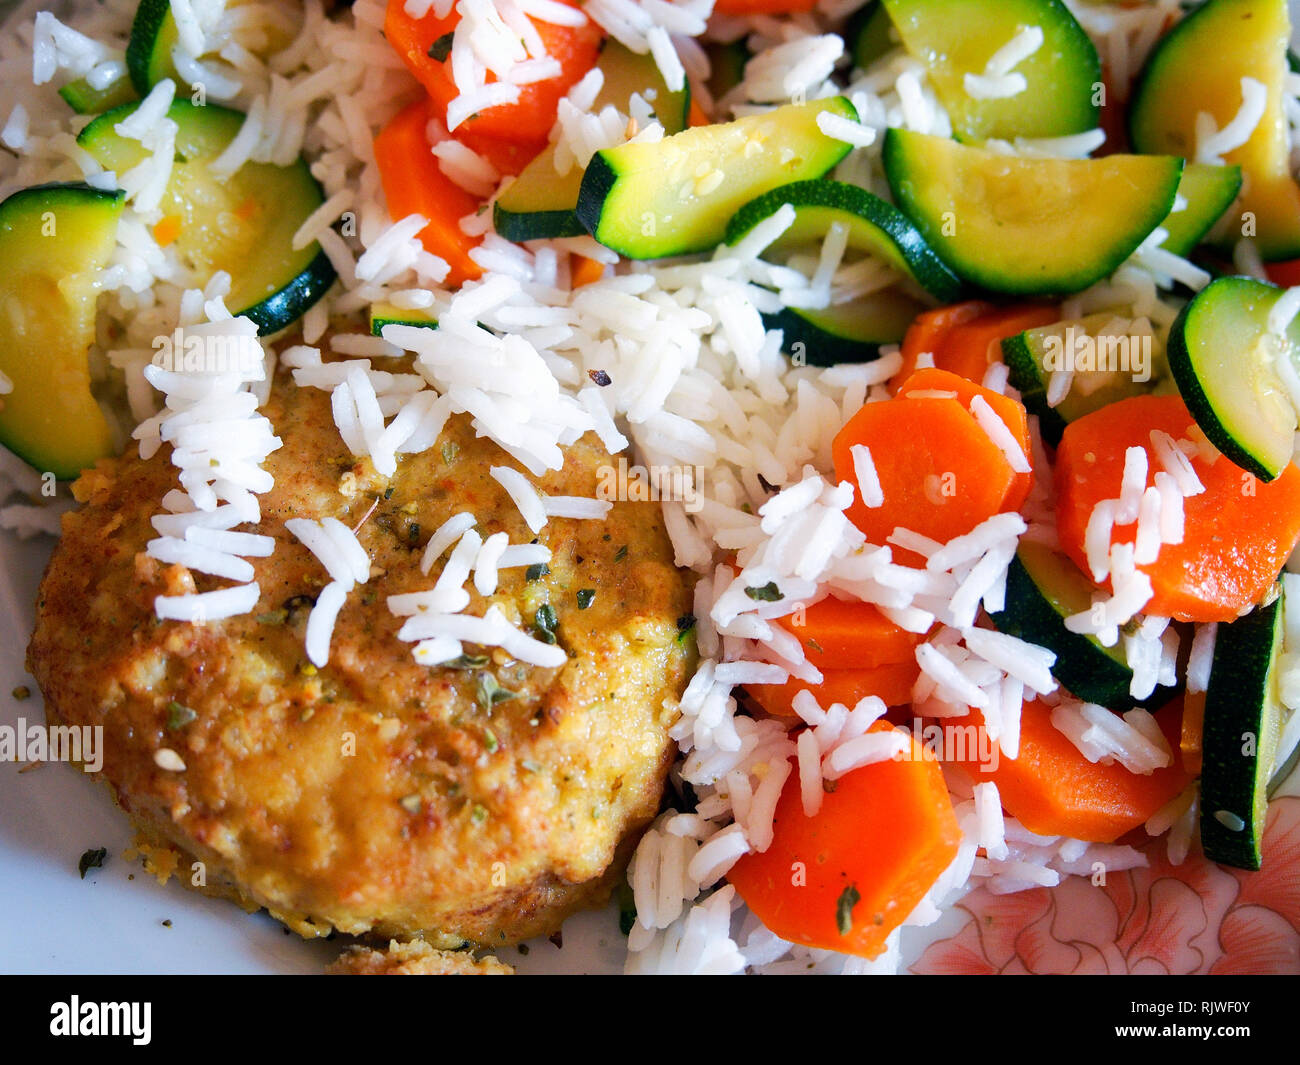 Vegan Grausamkeit kostenlos essen. Hirse Burger mit weißer Reis, Karotten und Zucchini. Stockfoto